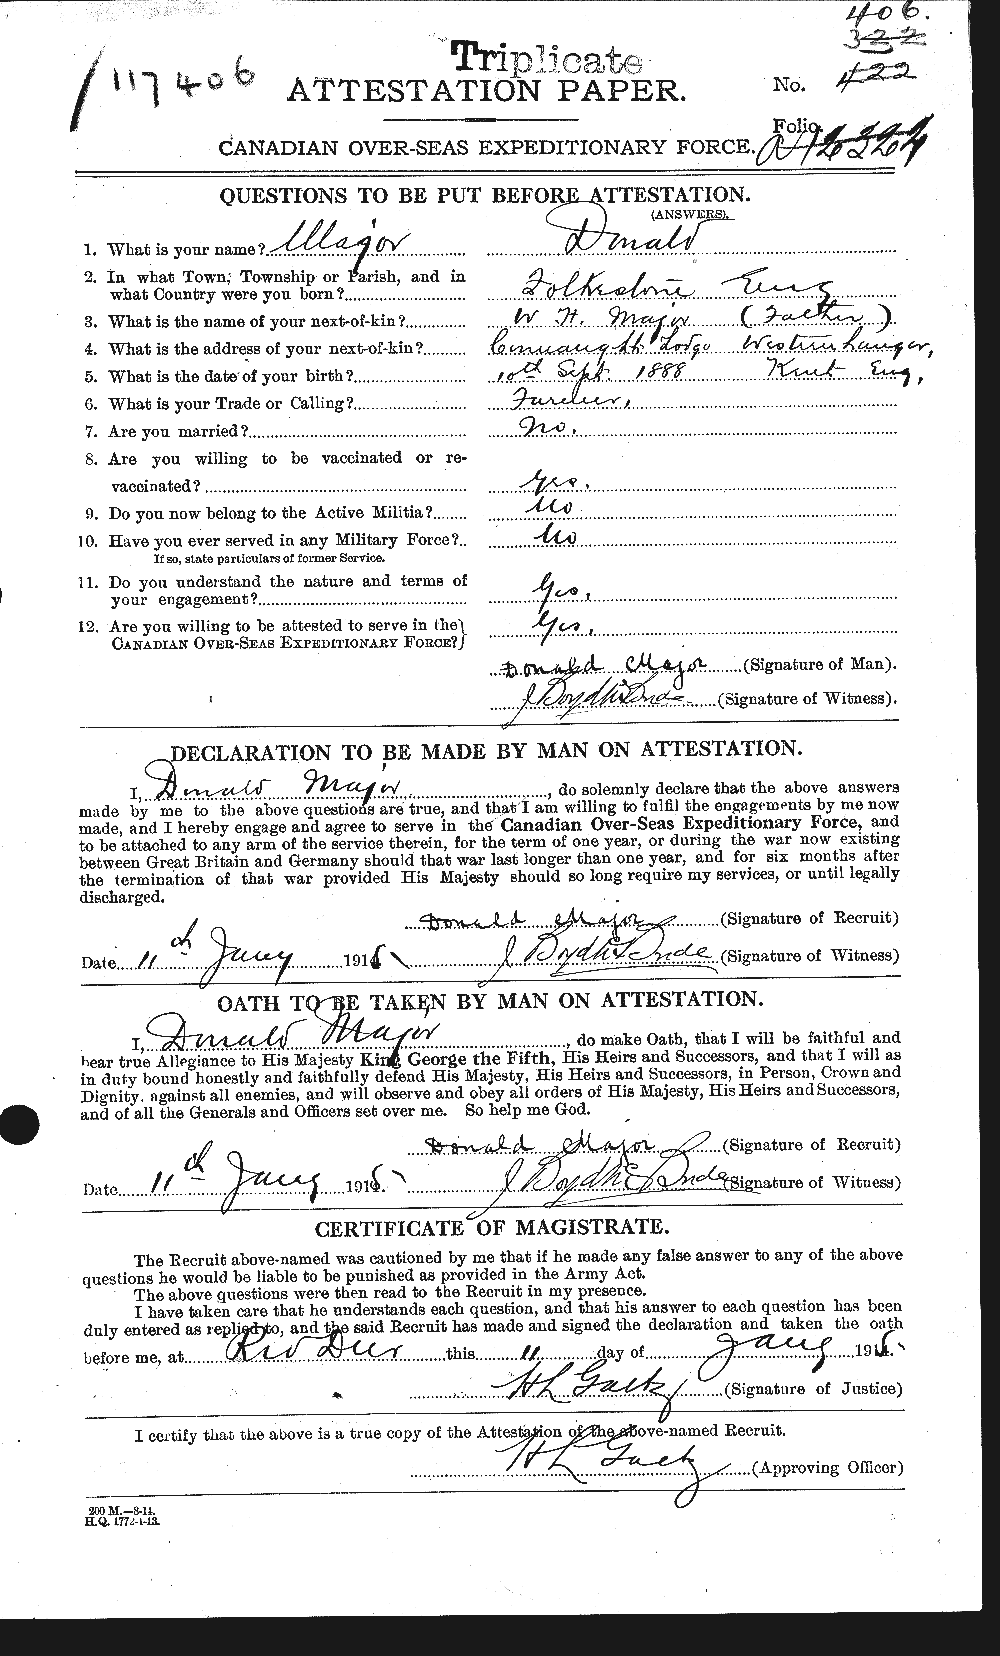 Dossiers du Personnel de la Première Guerre mondiale - CEC 477820a